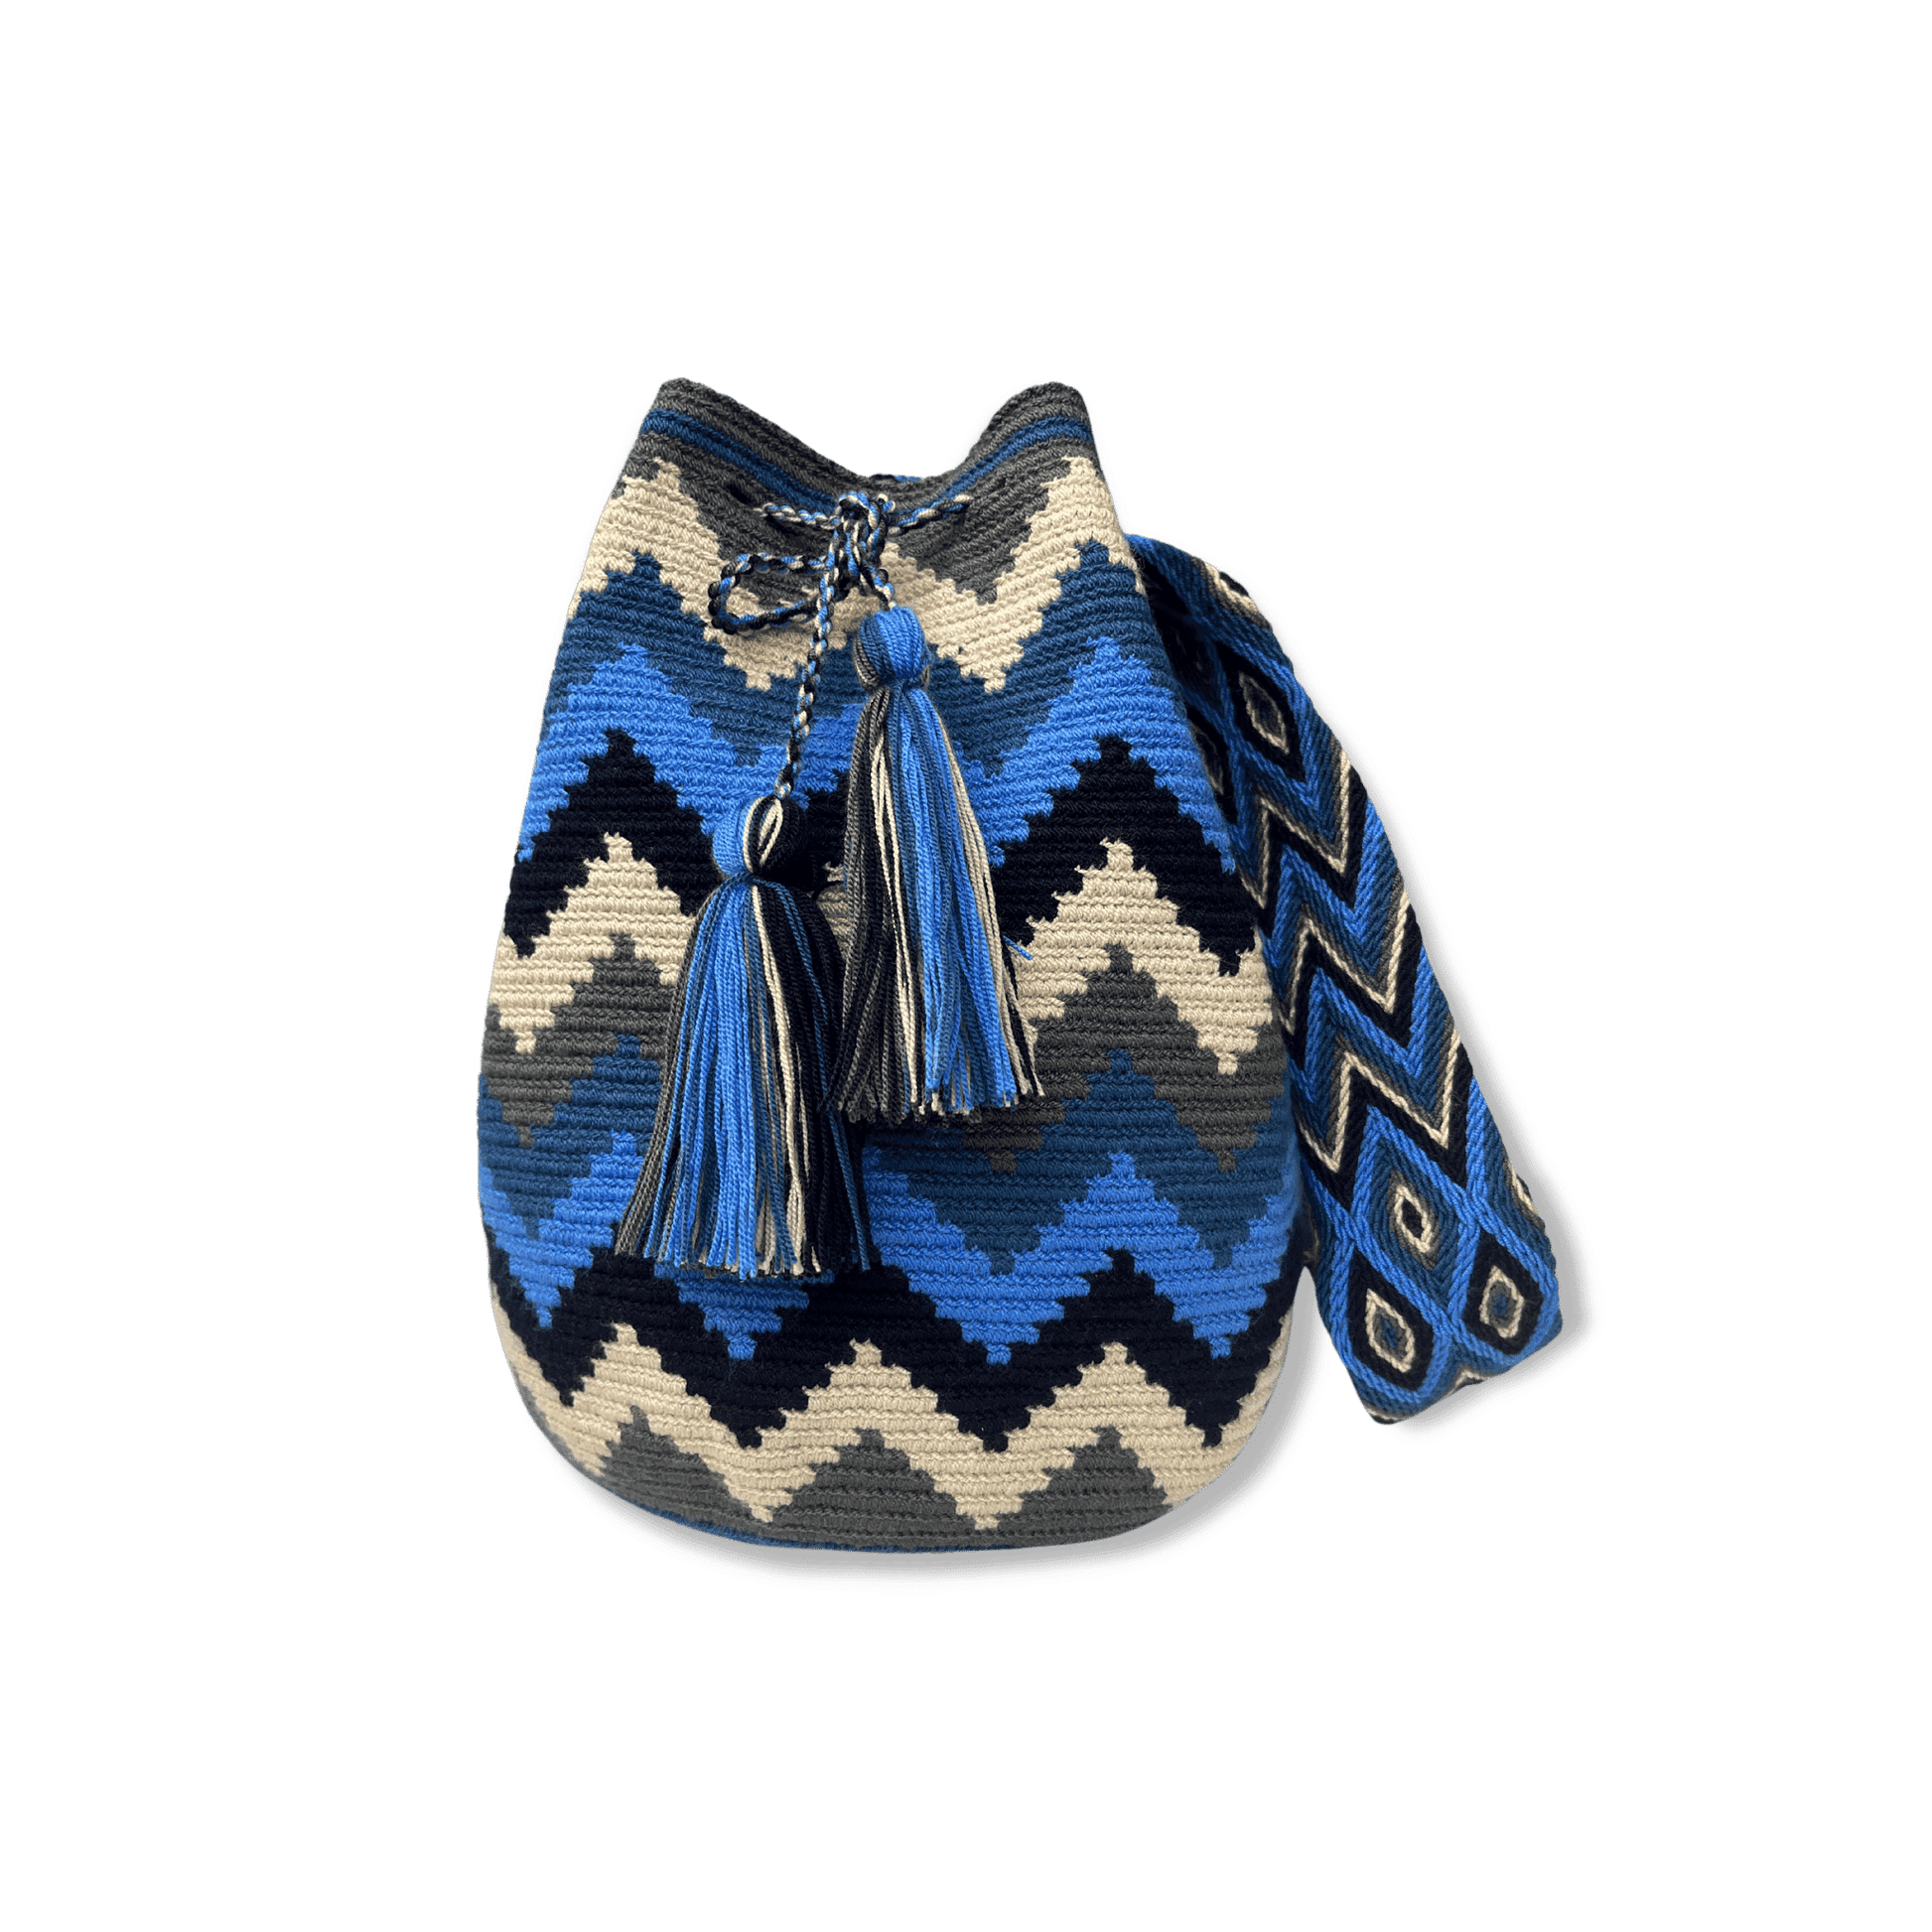 Mochila wayu para mujer con diseño de montañas en colores azules, gris y beige